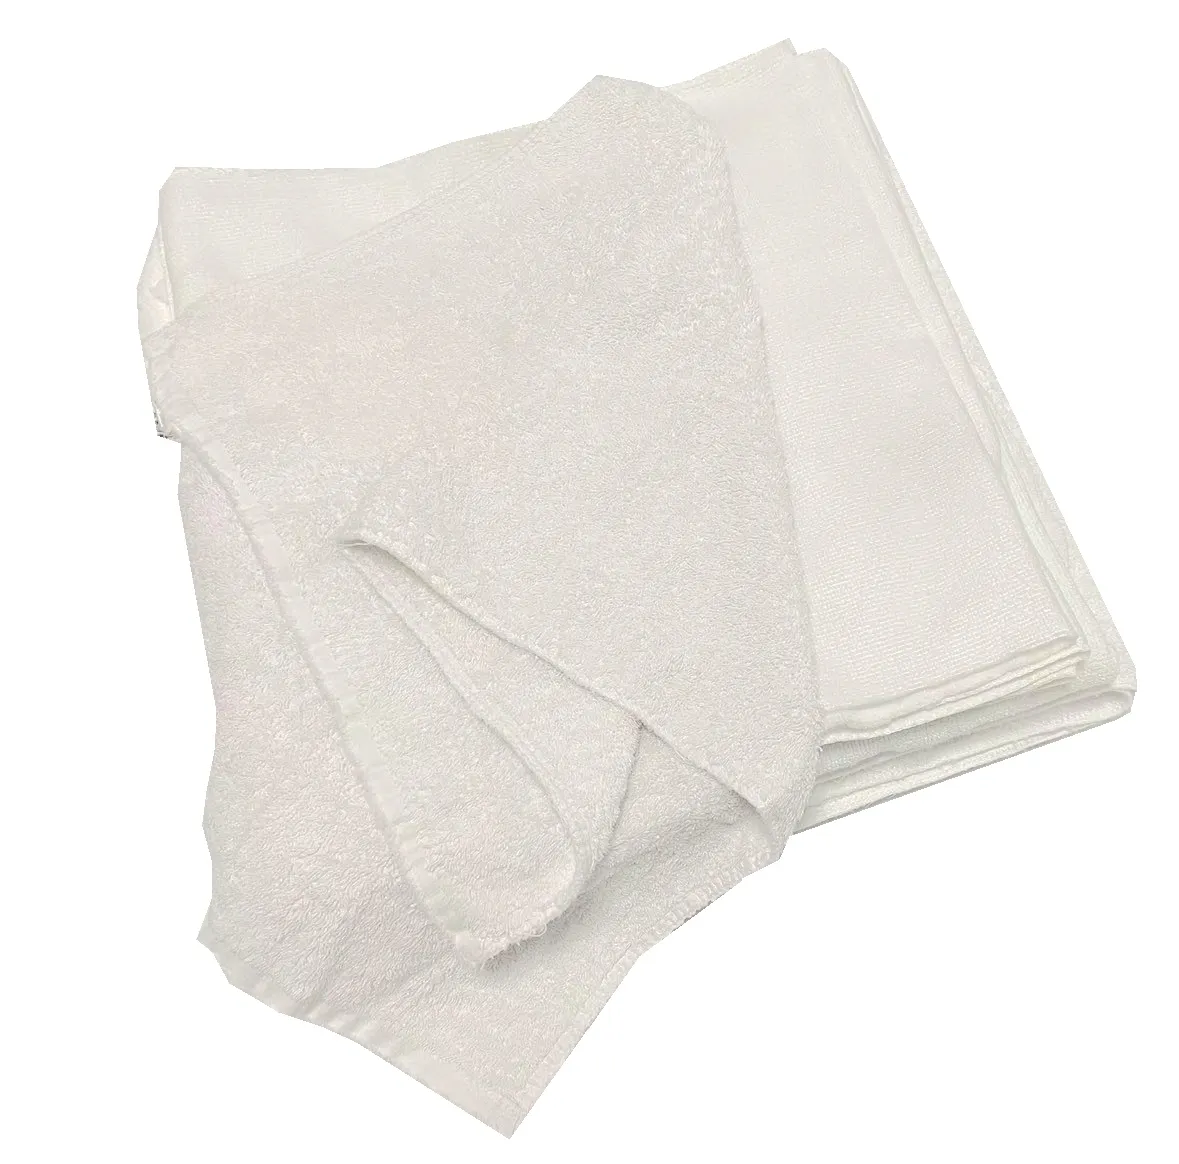 공업용 면 테리 수건 걸레를 100% 우수한 흡수성 효율적인 청소 60-120 CM 흰색 수건 걸레